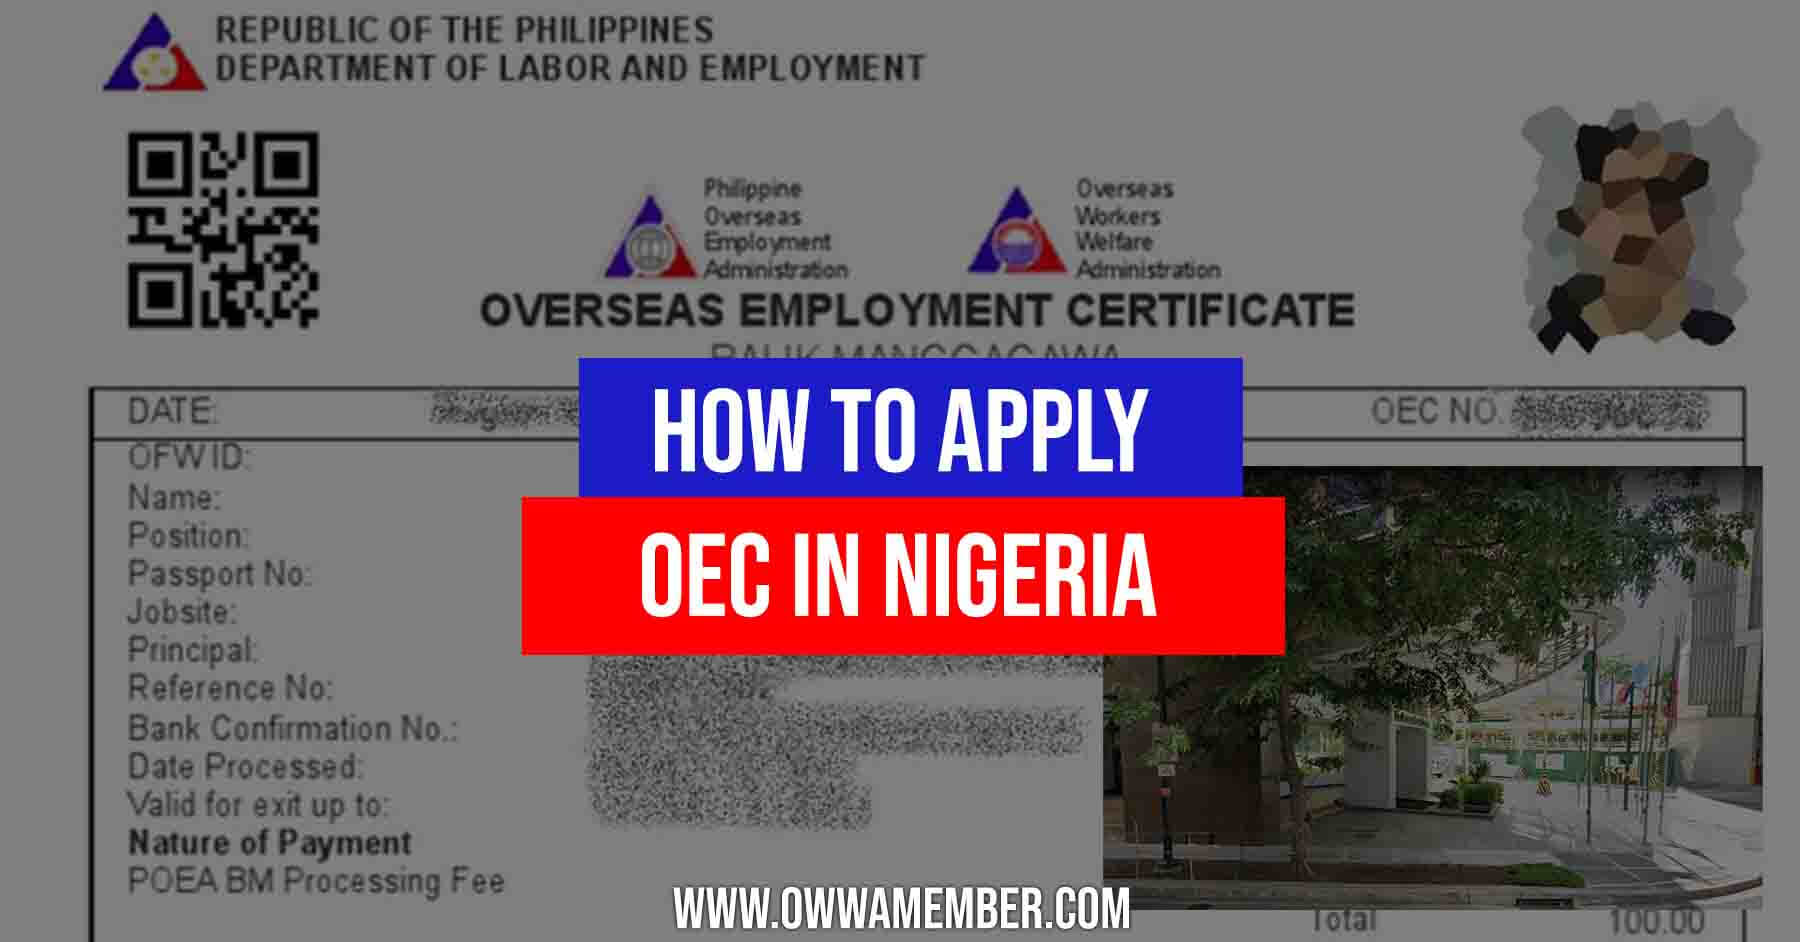 overseas employment certificate oec balik manggagawa nigeria